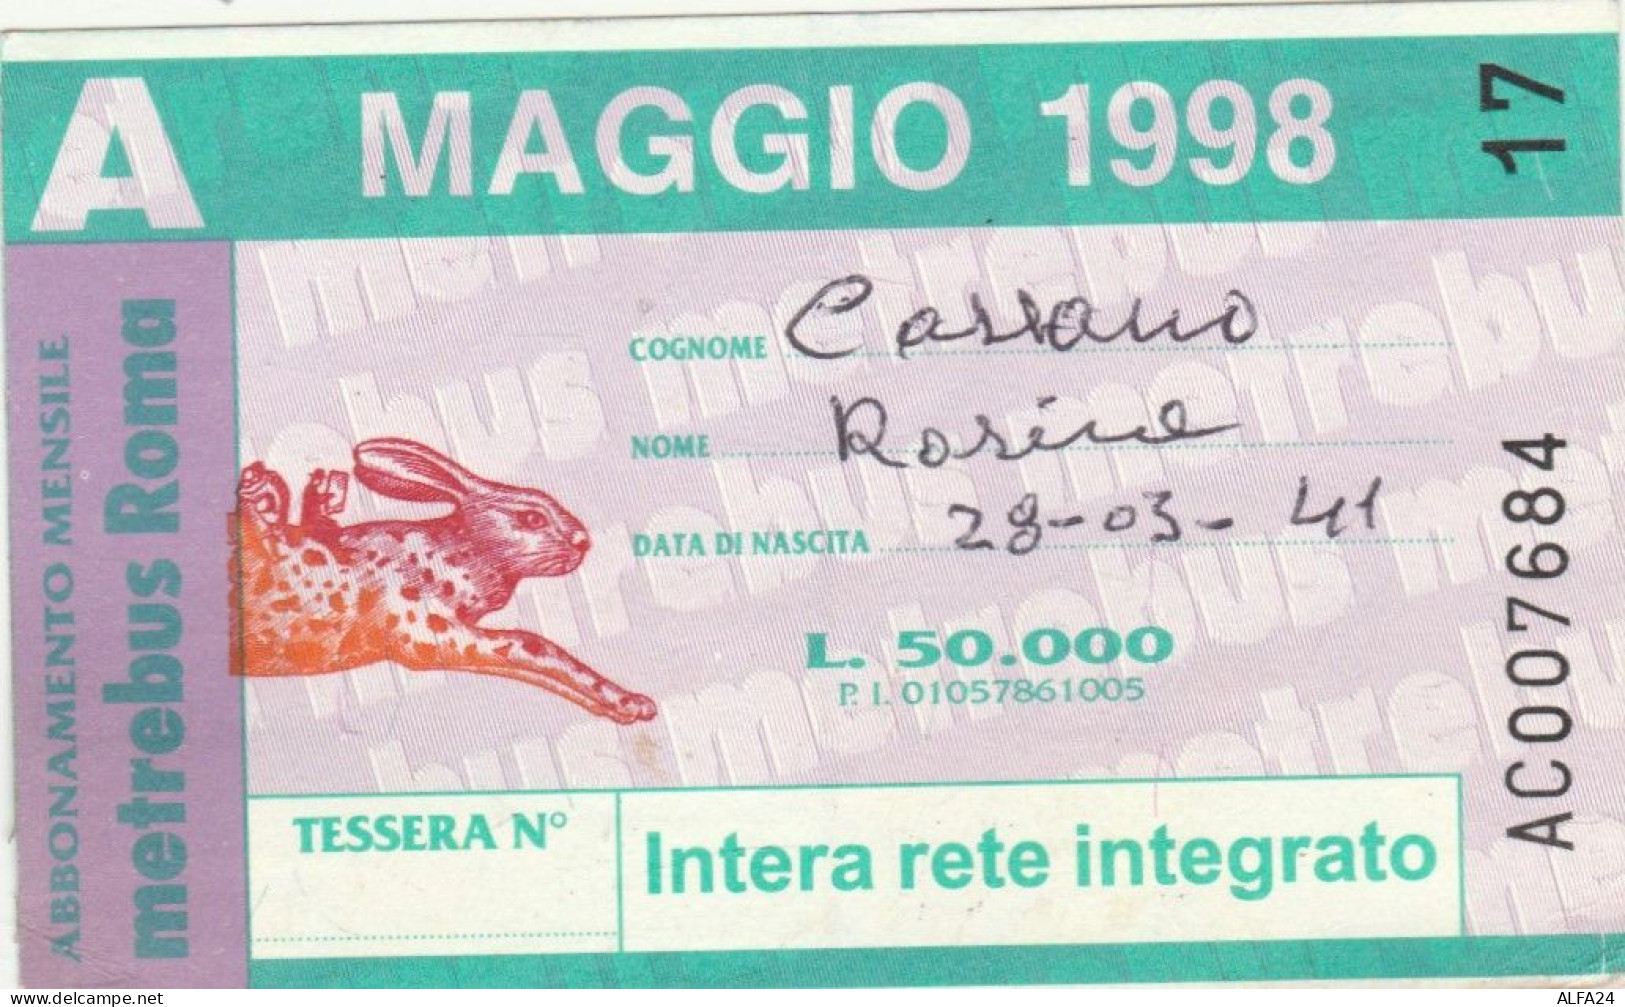 ABBONAMENTO AUTOBUS METRO ROMA ATAC MAGGIO 1998 (MK113 - Europe